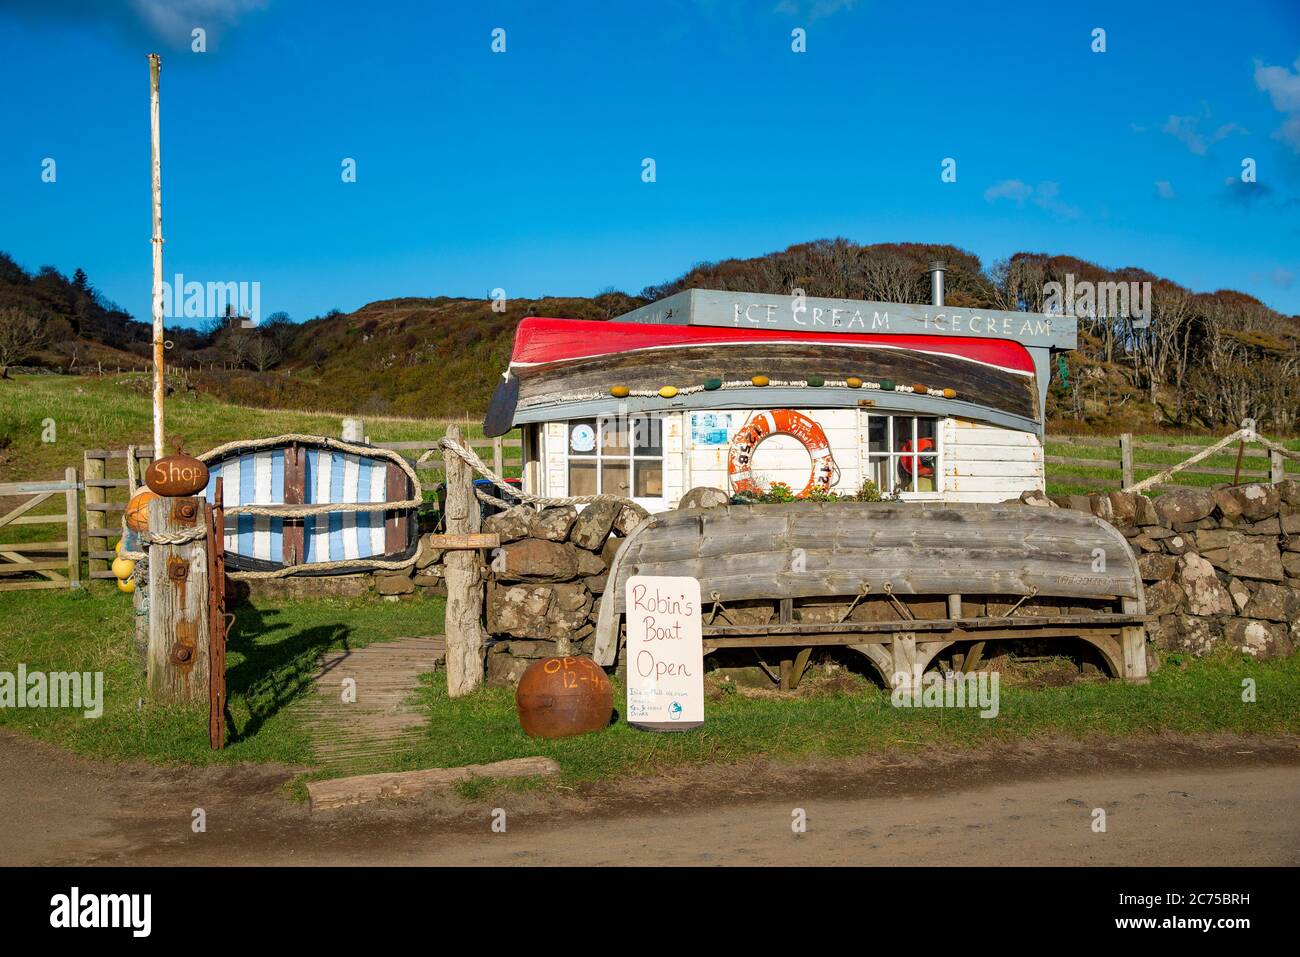 Ice cream shack, Calgary Bay, Calgary, a hamlet on the northwest coast of the Isle of Mull, Argyll and Bute, Scotland, United Kingdom. Stock Photo